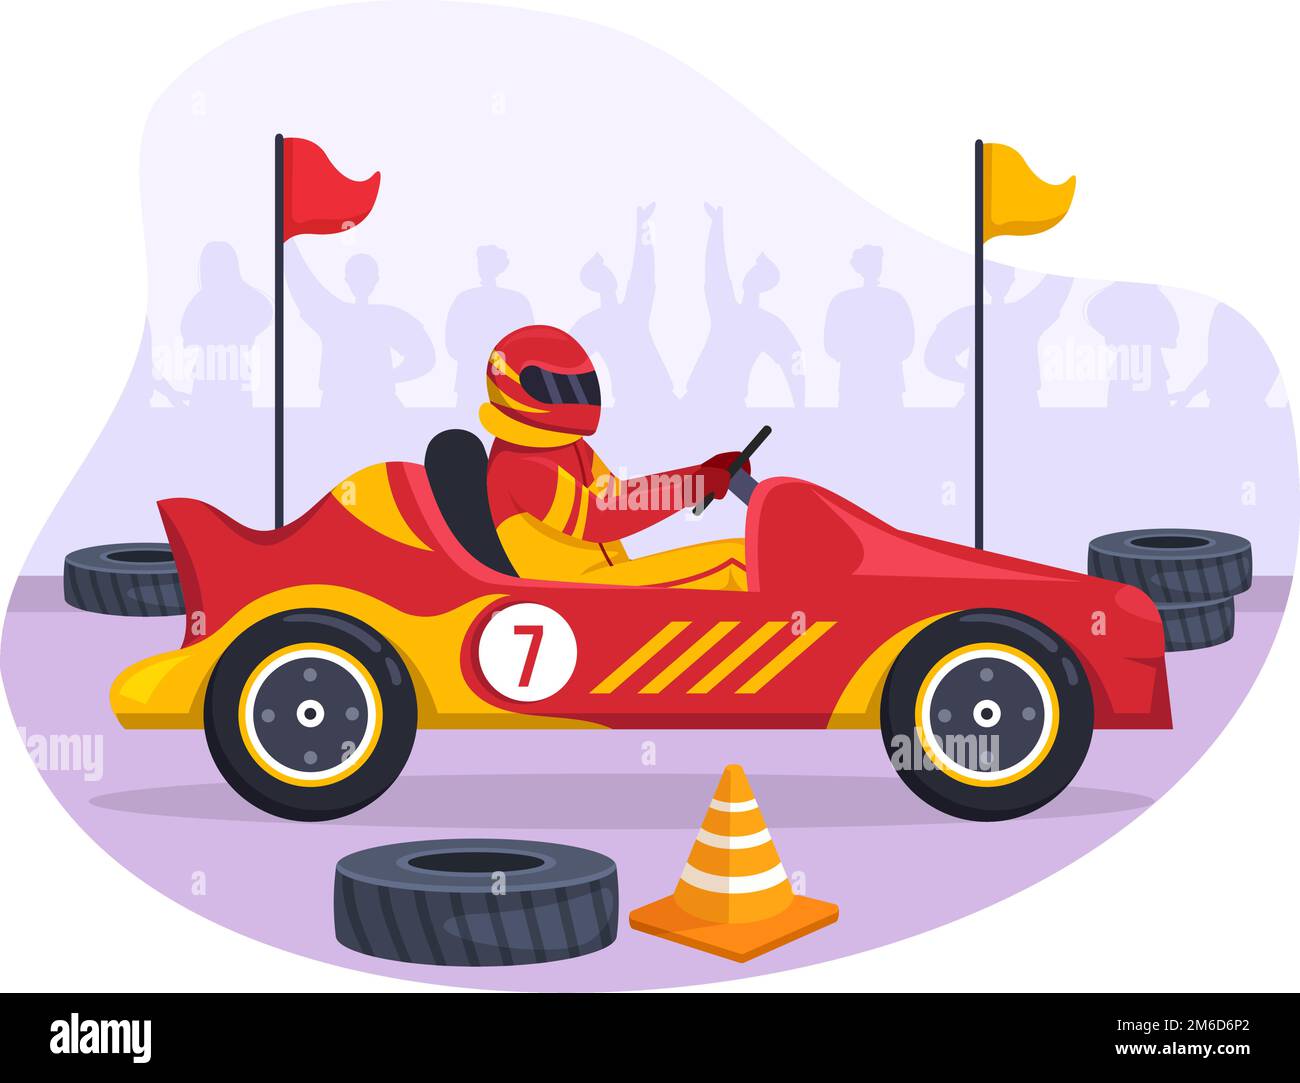 Formula Racing Sportwagen greifen auf der Rennstrecke die Ziellinie Cartoon-Illustration, um die Meisterschaft im flachen handgezogenen Vorlagendesign zu gewinnen Stock Vektor